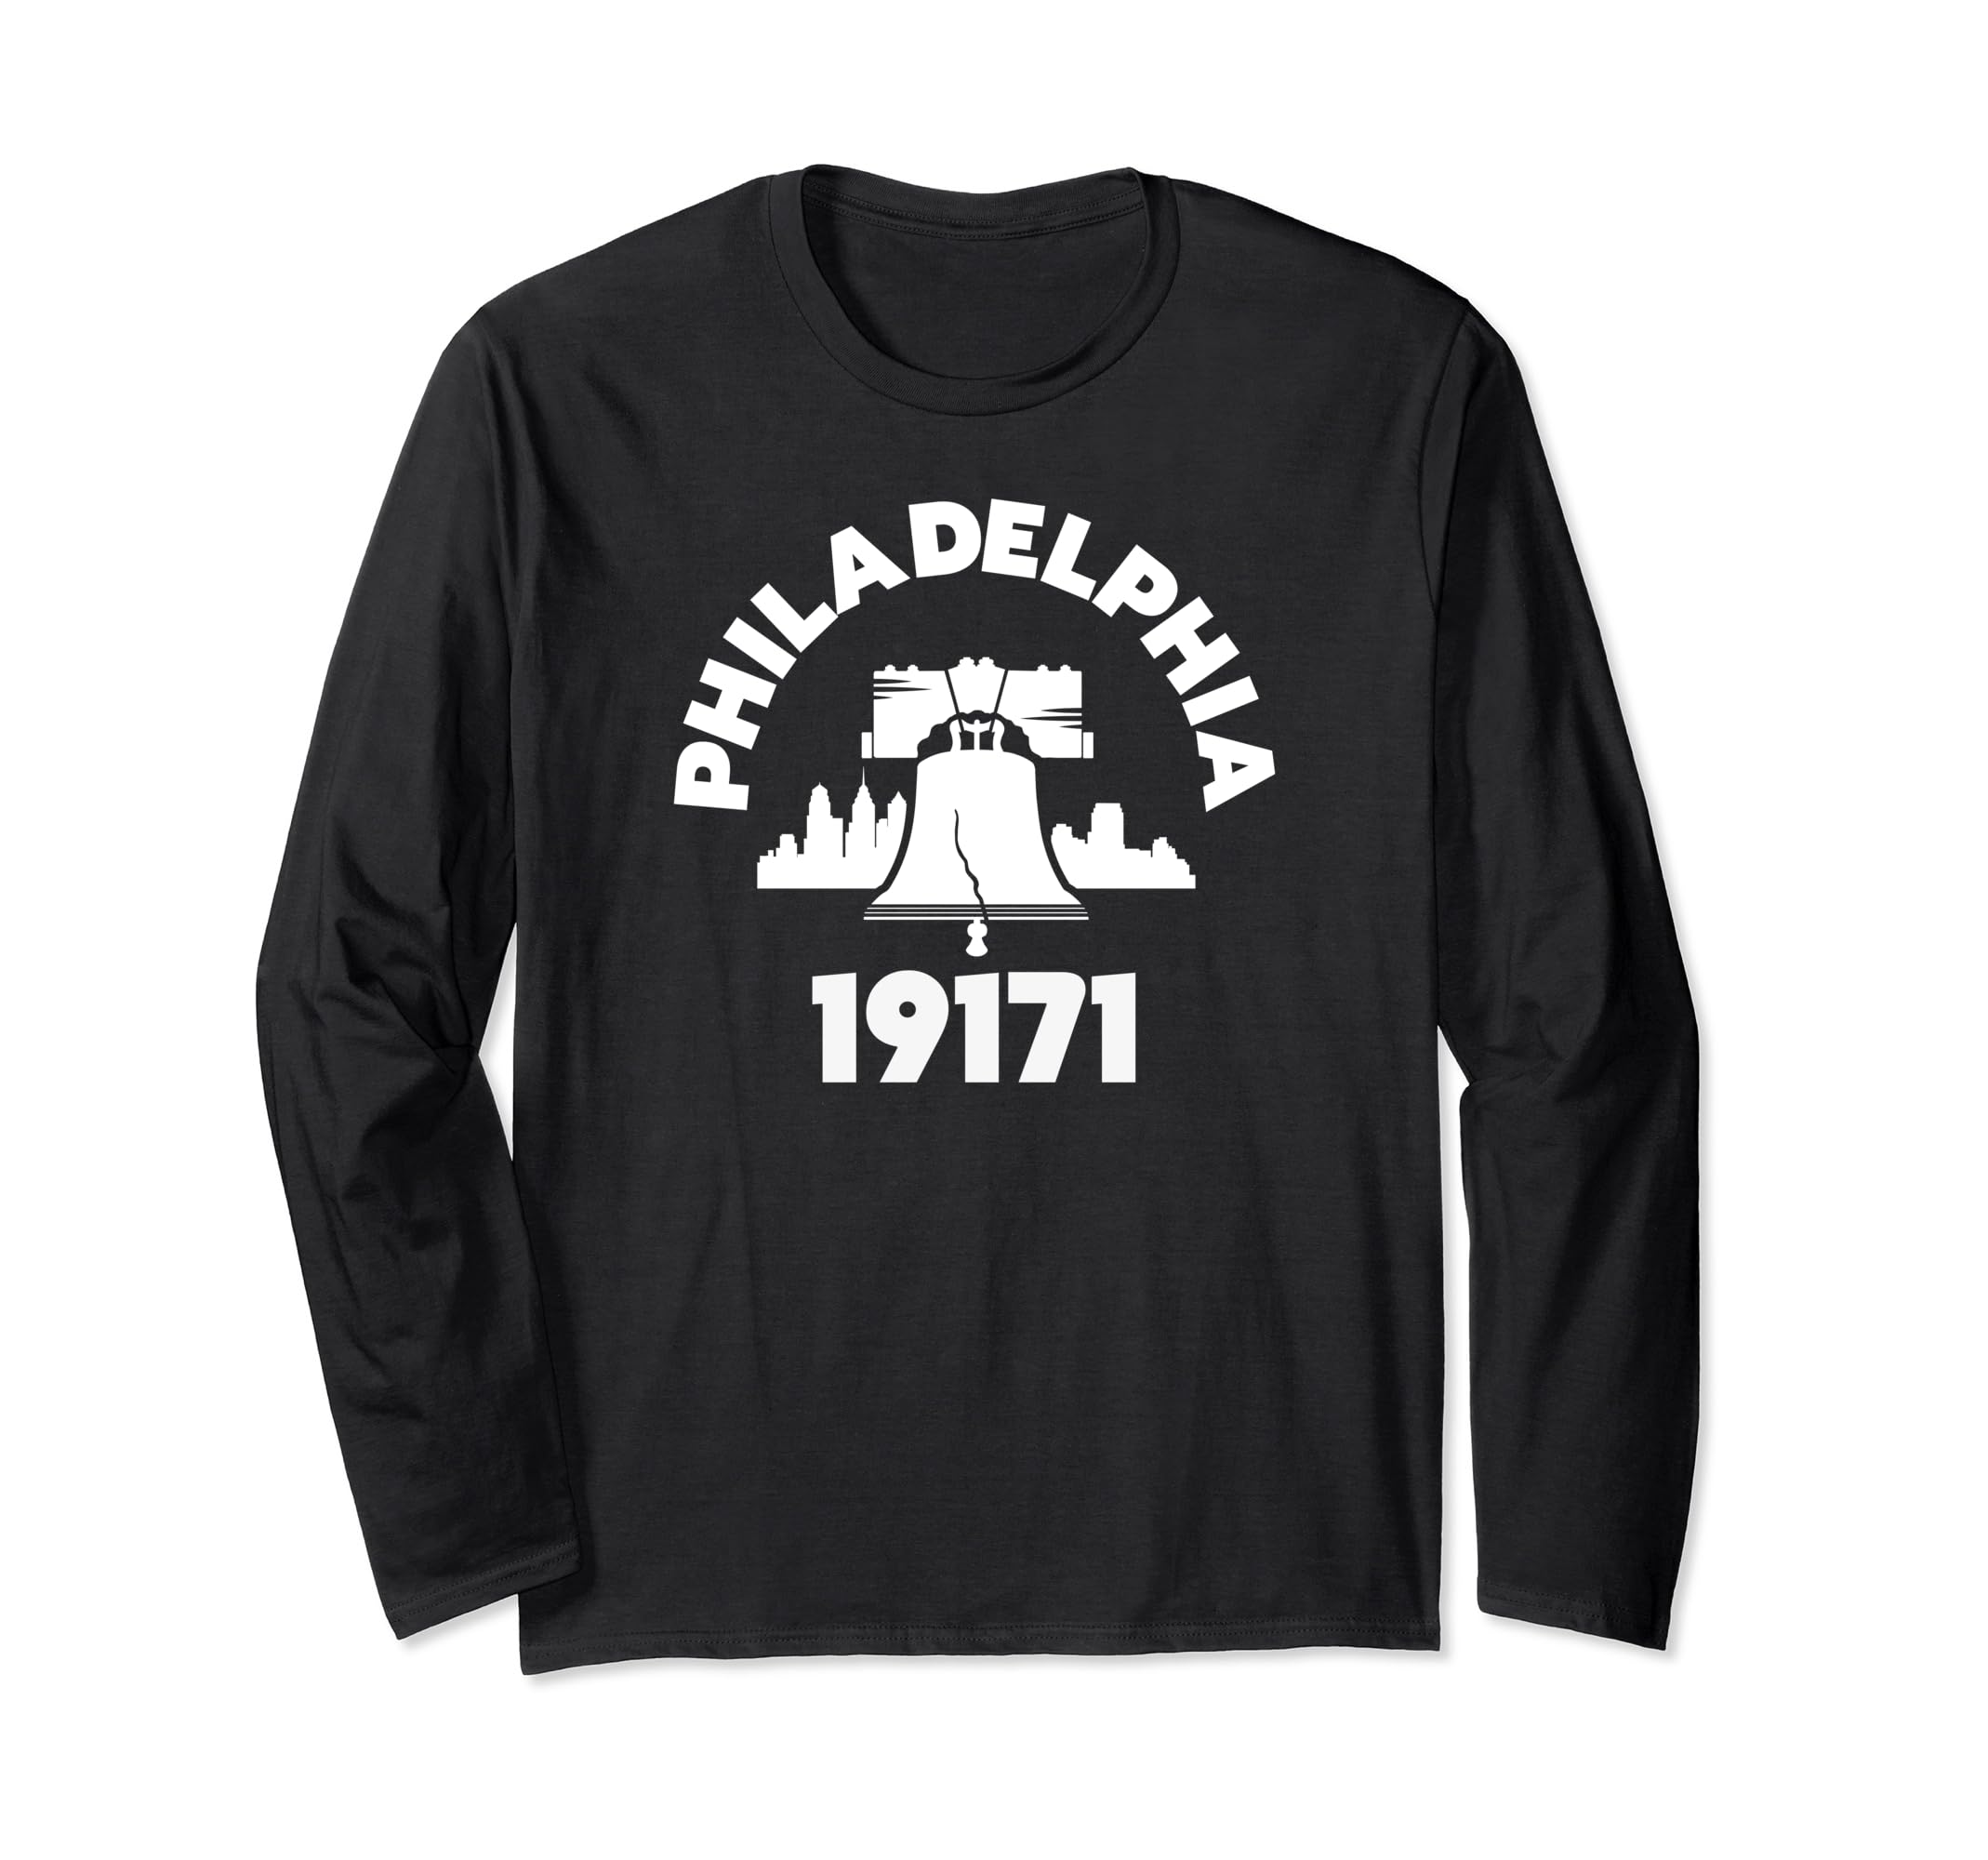 Philly Neighborhood 19171 Zip Code Philadelphia Liberty Bell Long Sleeve T-Shirt